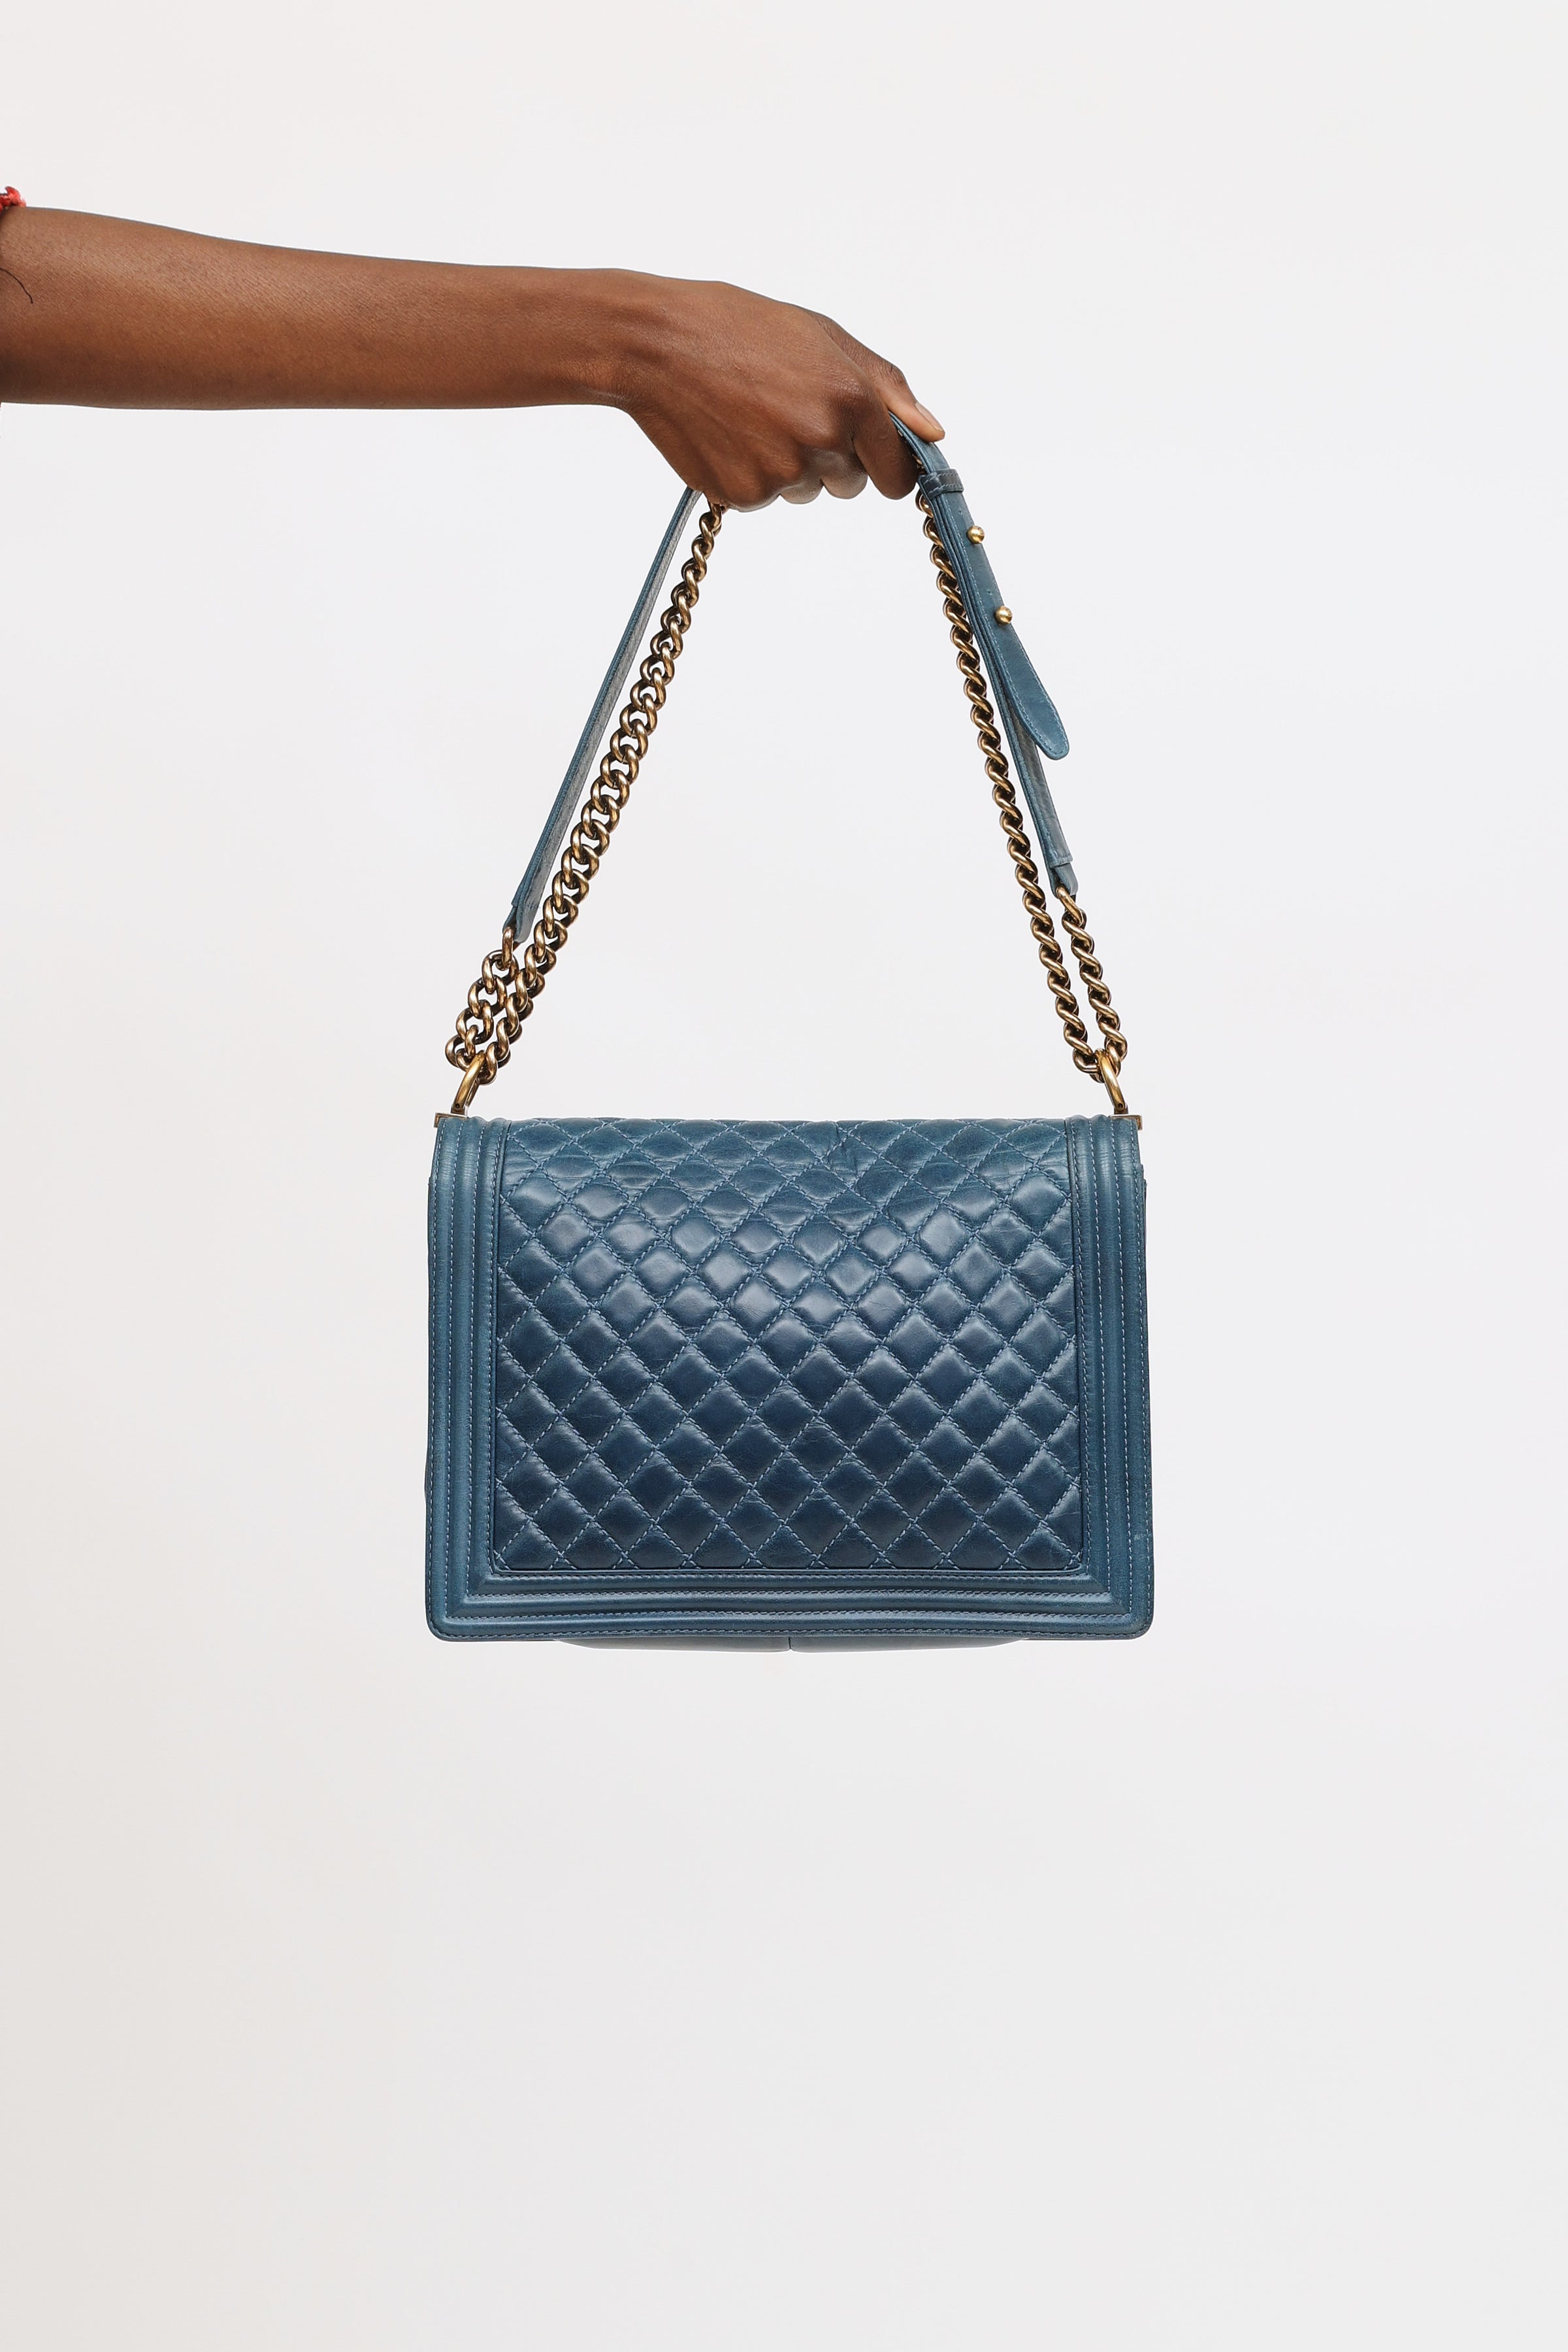 Chanel Blue Boy Bag at 1stDibs  chanel boy bag, chanel crossbody purse